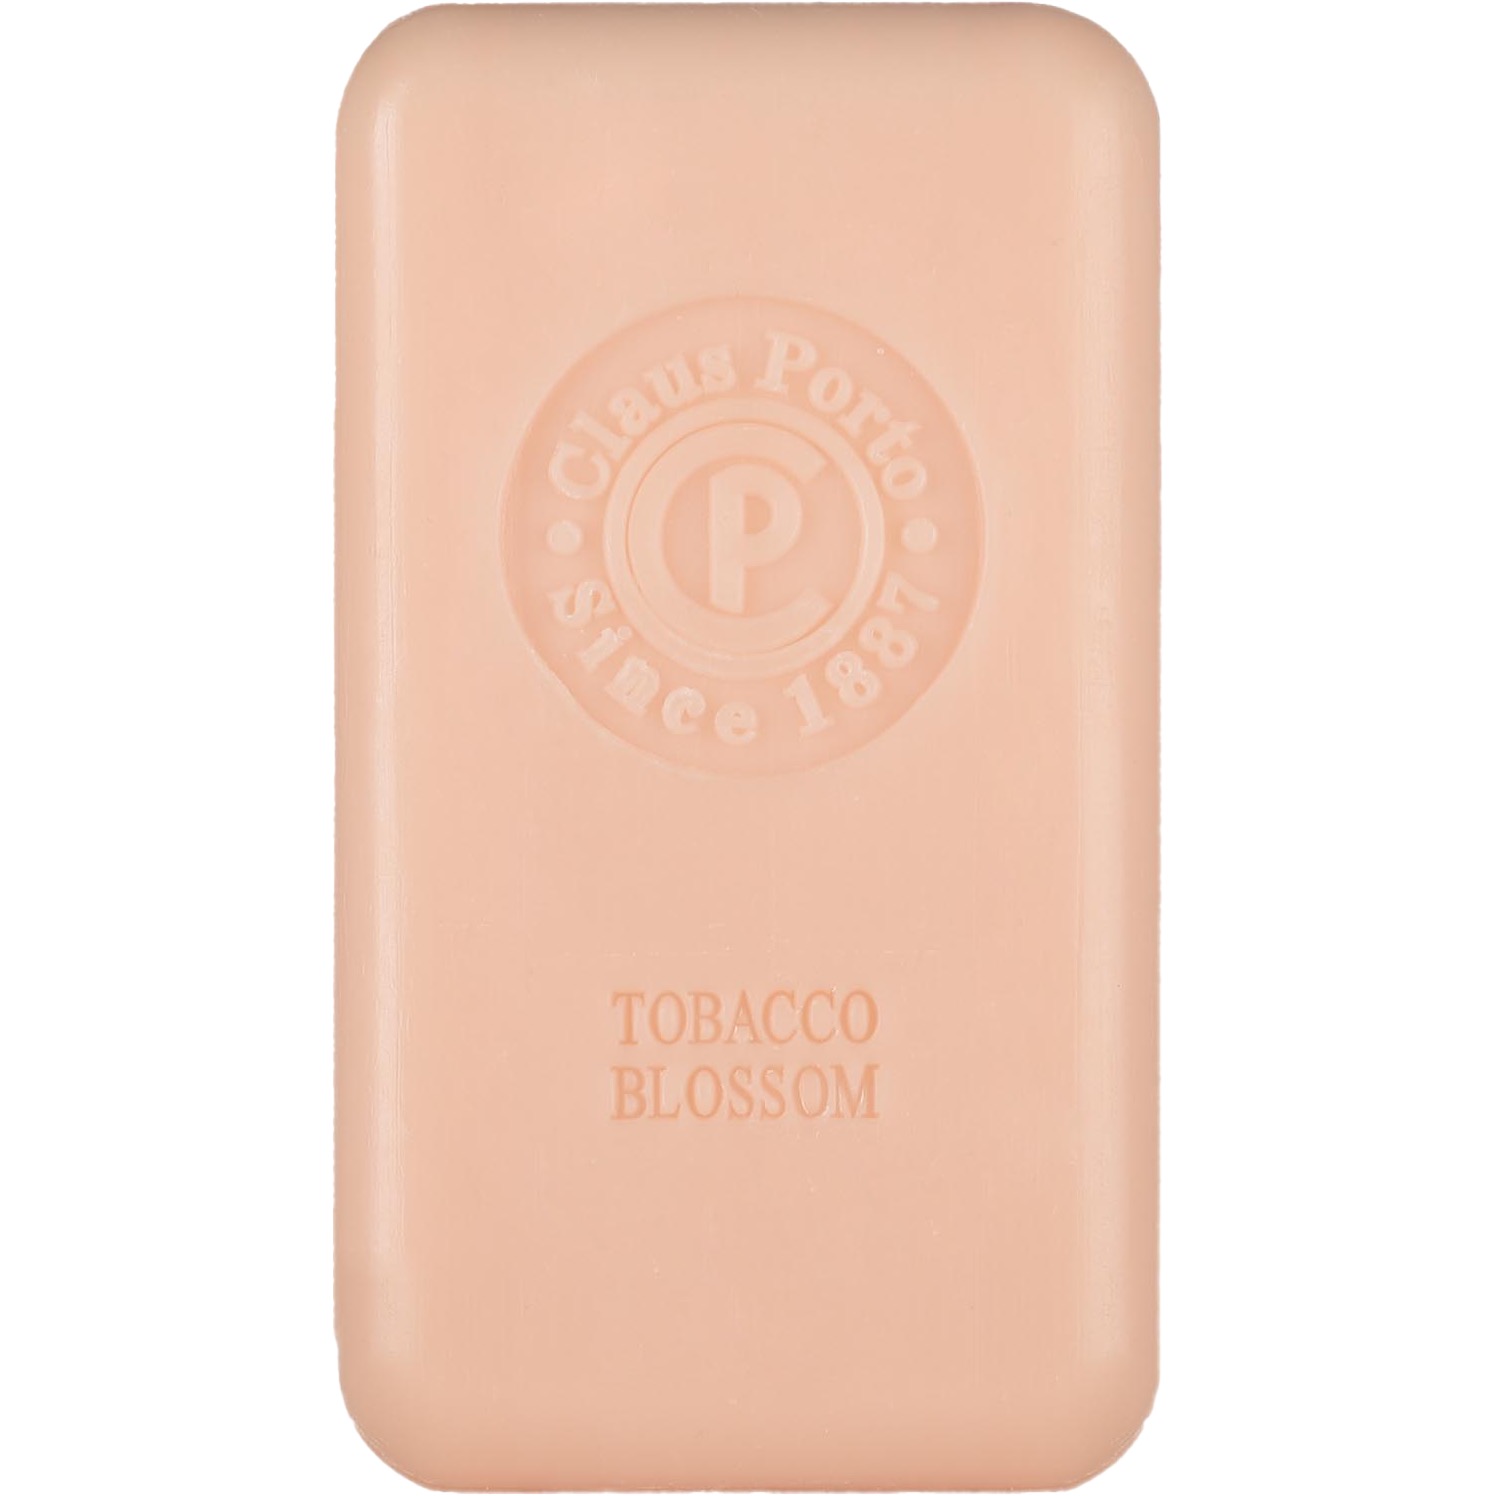 Claus Porto Soap Bar Tango Tobacco Blossom 150g - 1.2 - CP-F009W